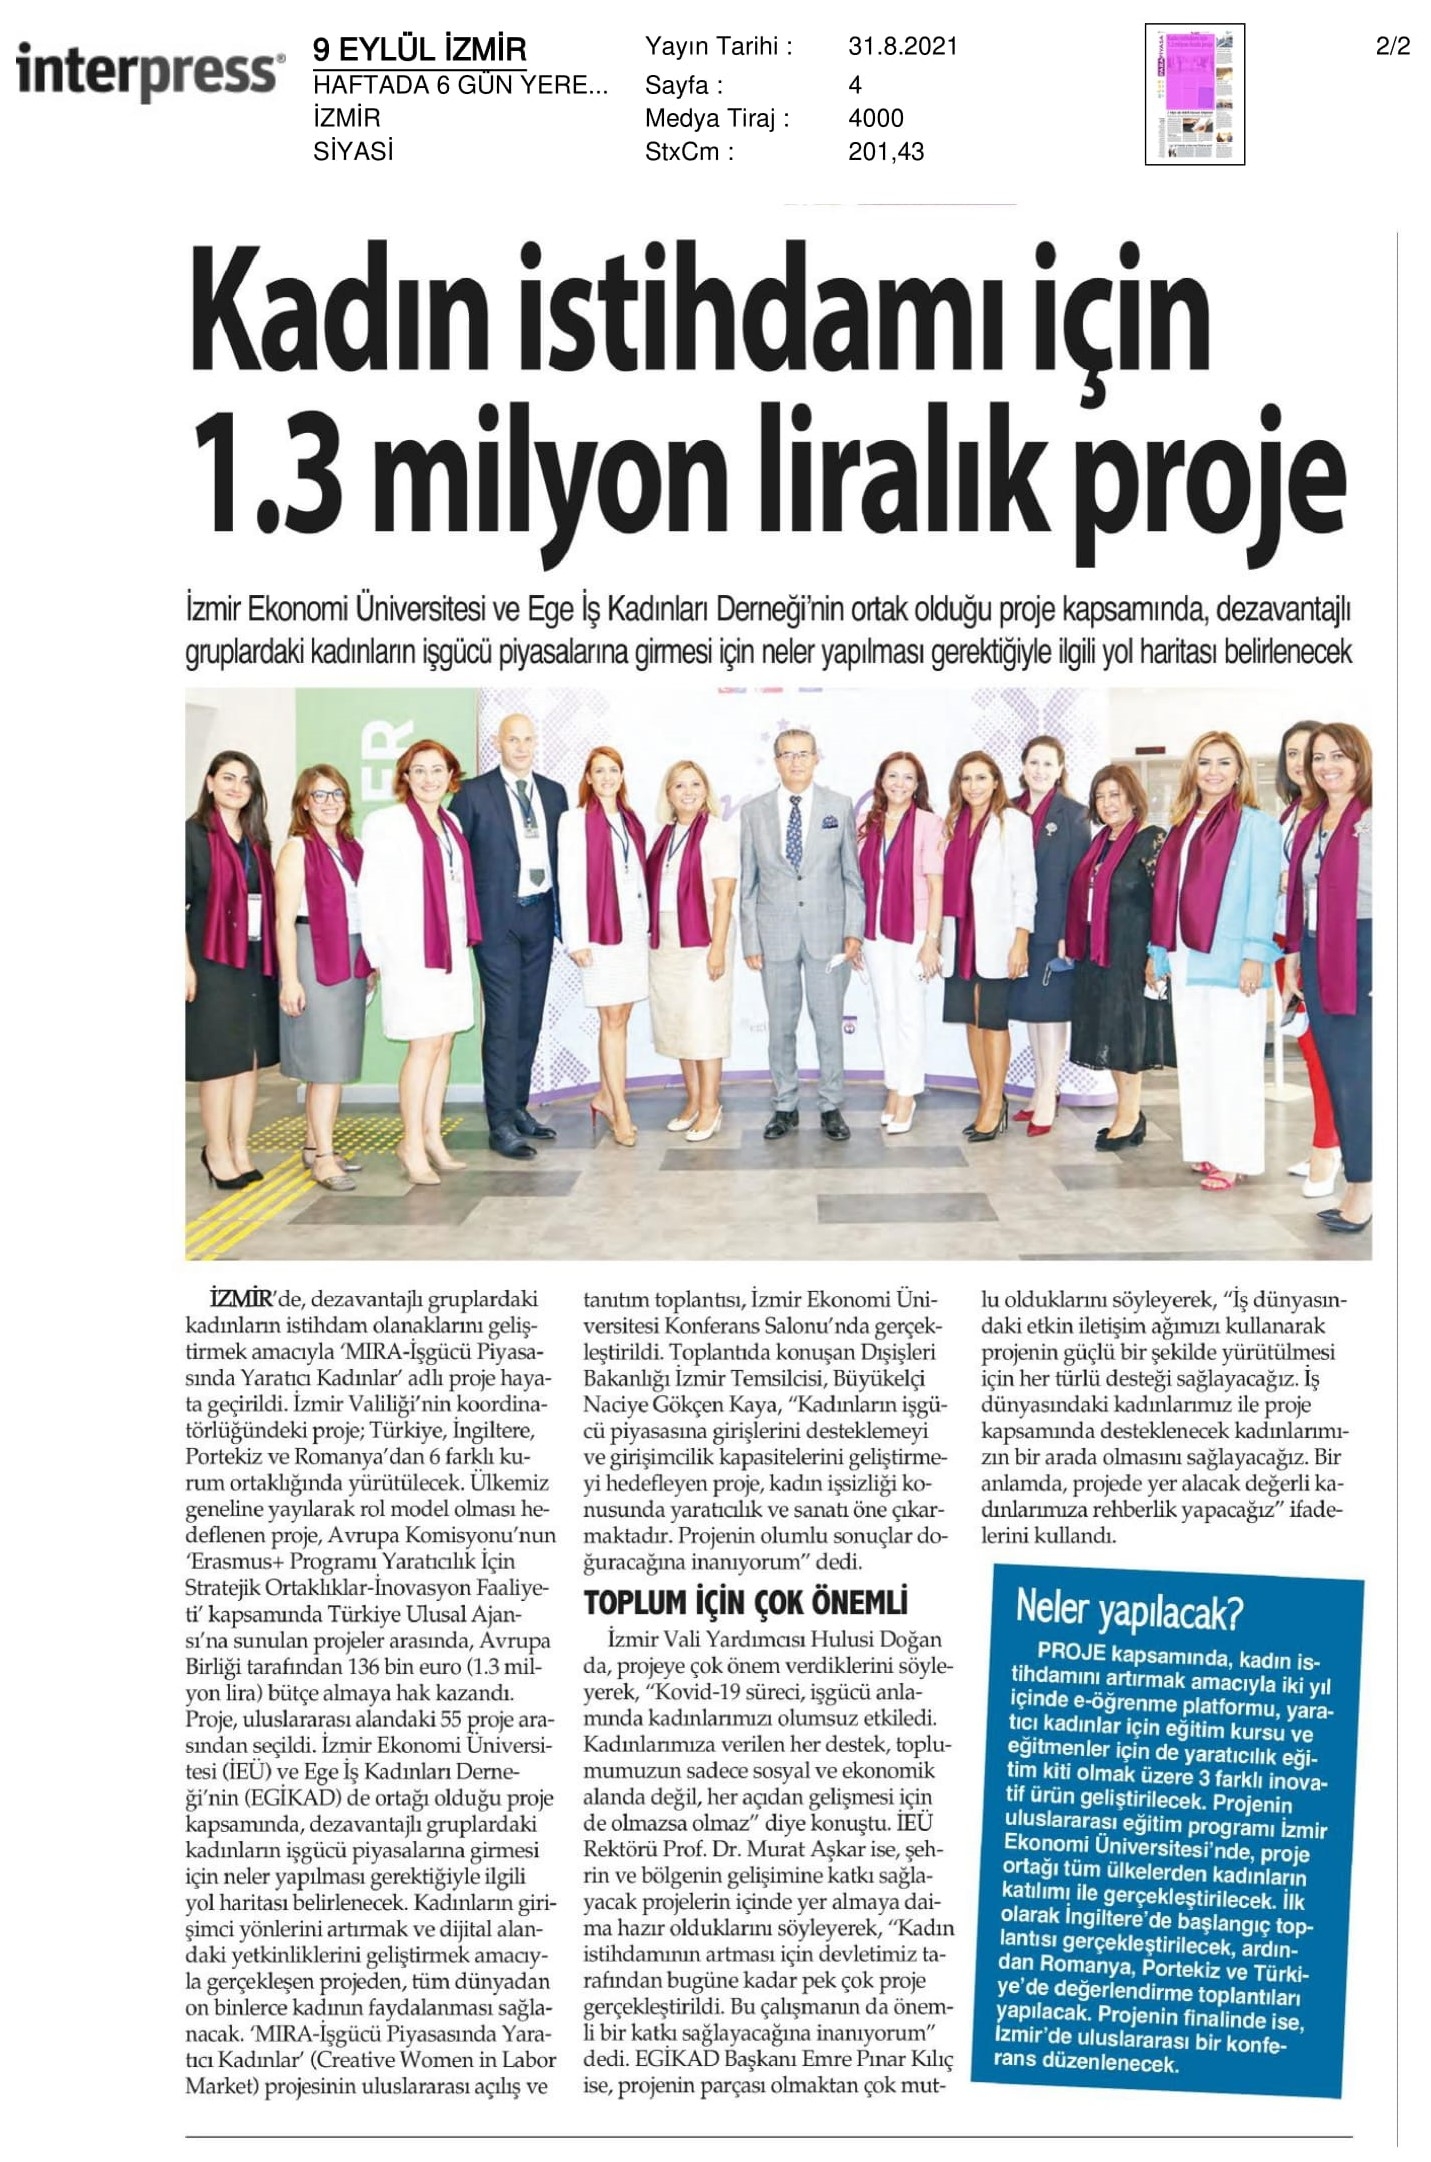 Kadın istihdamı için ‘1.3 milyon liralık’ proje